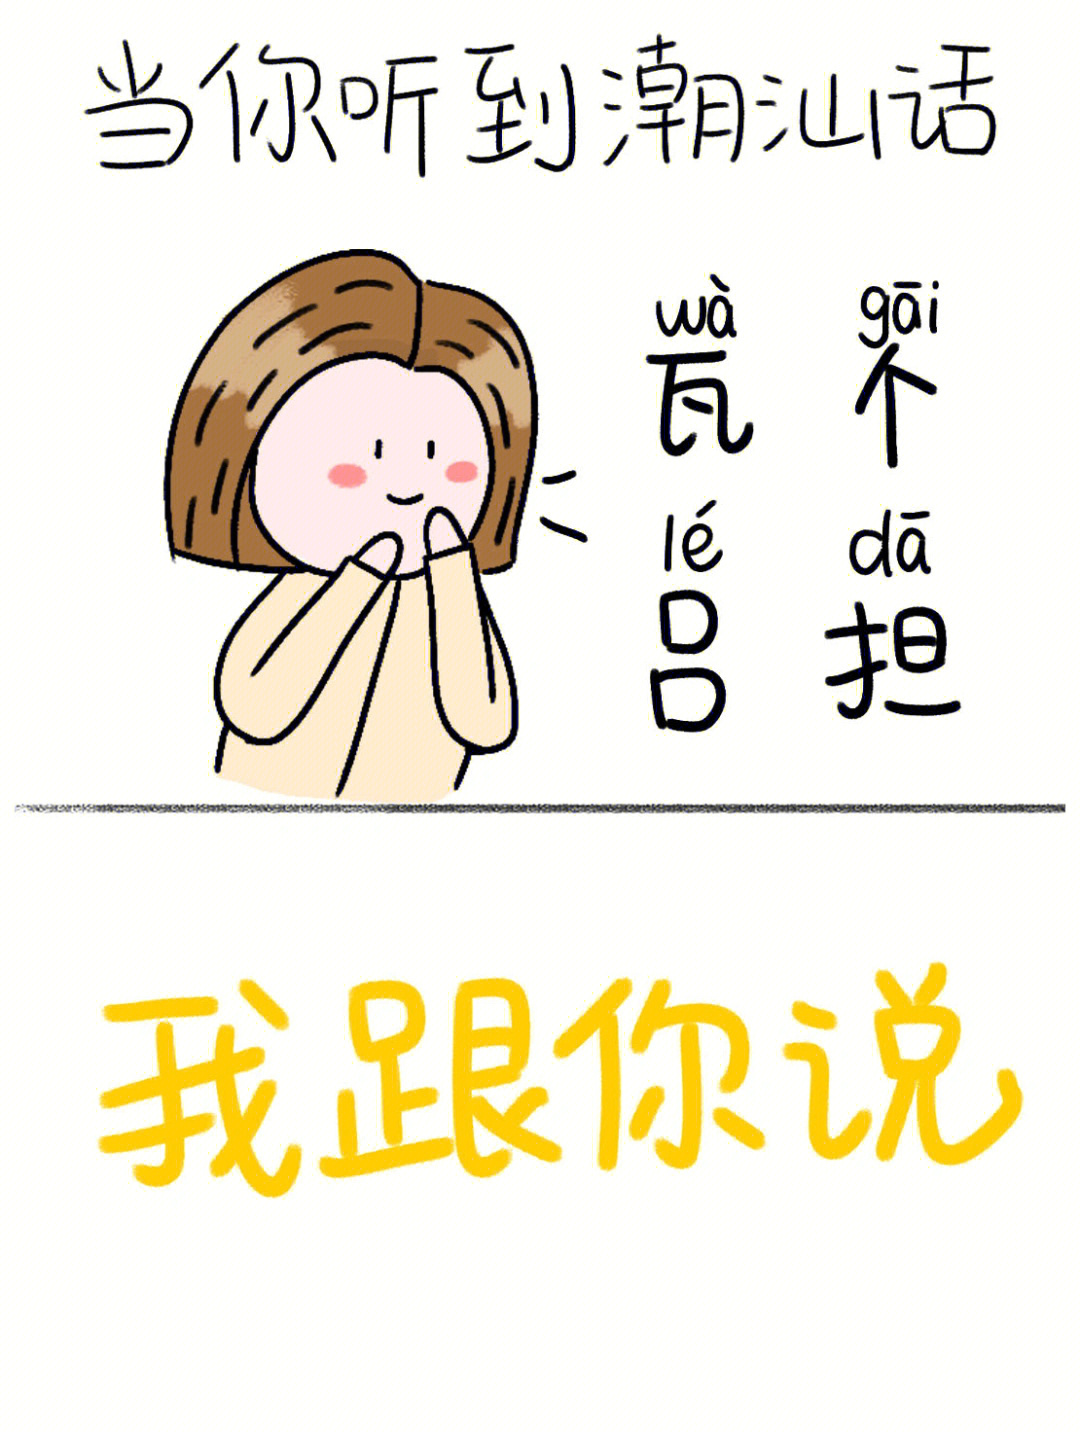 潮汕话34字话原来这么多网友想学潮汕话